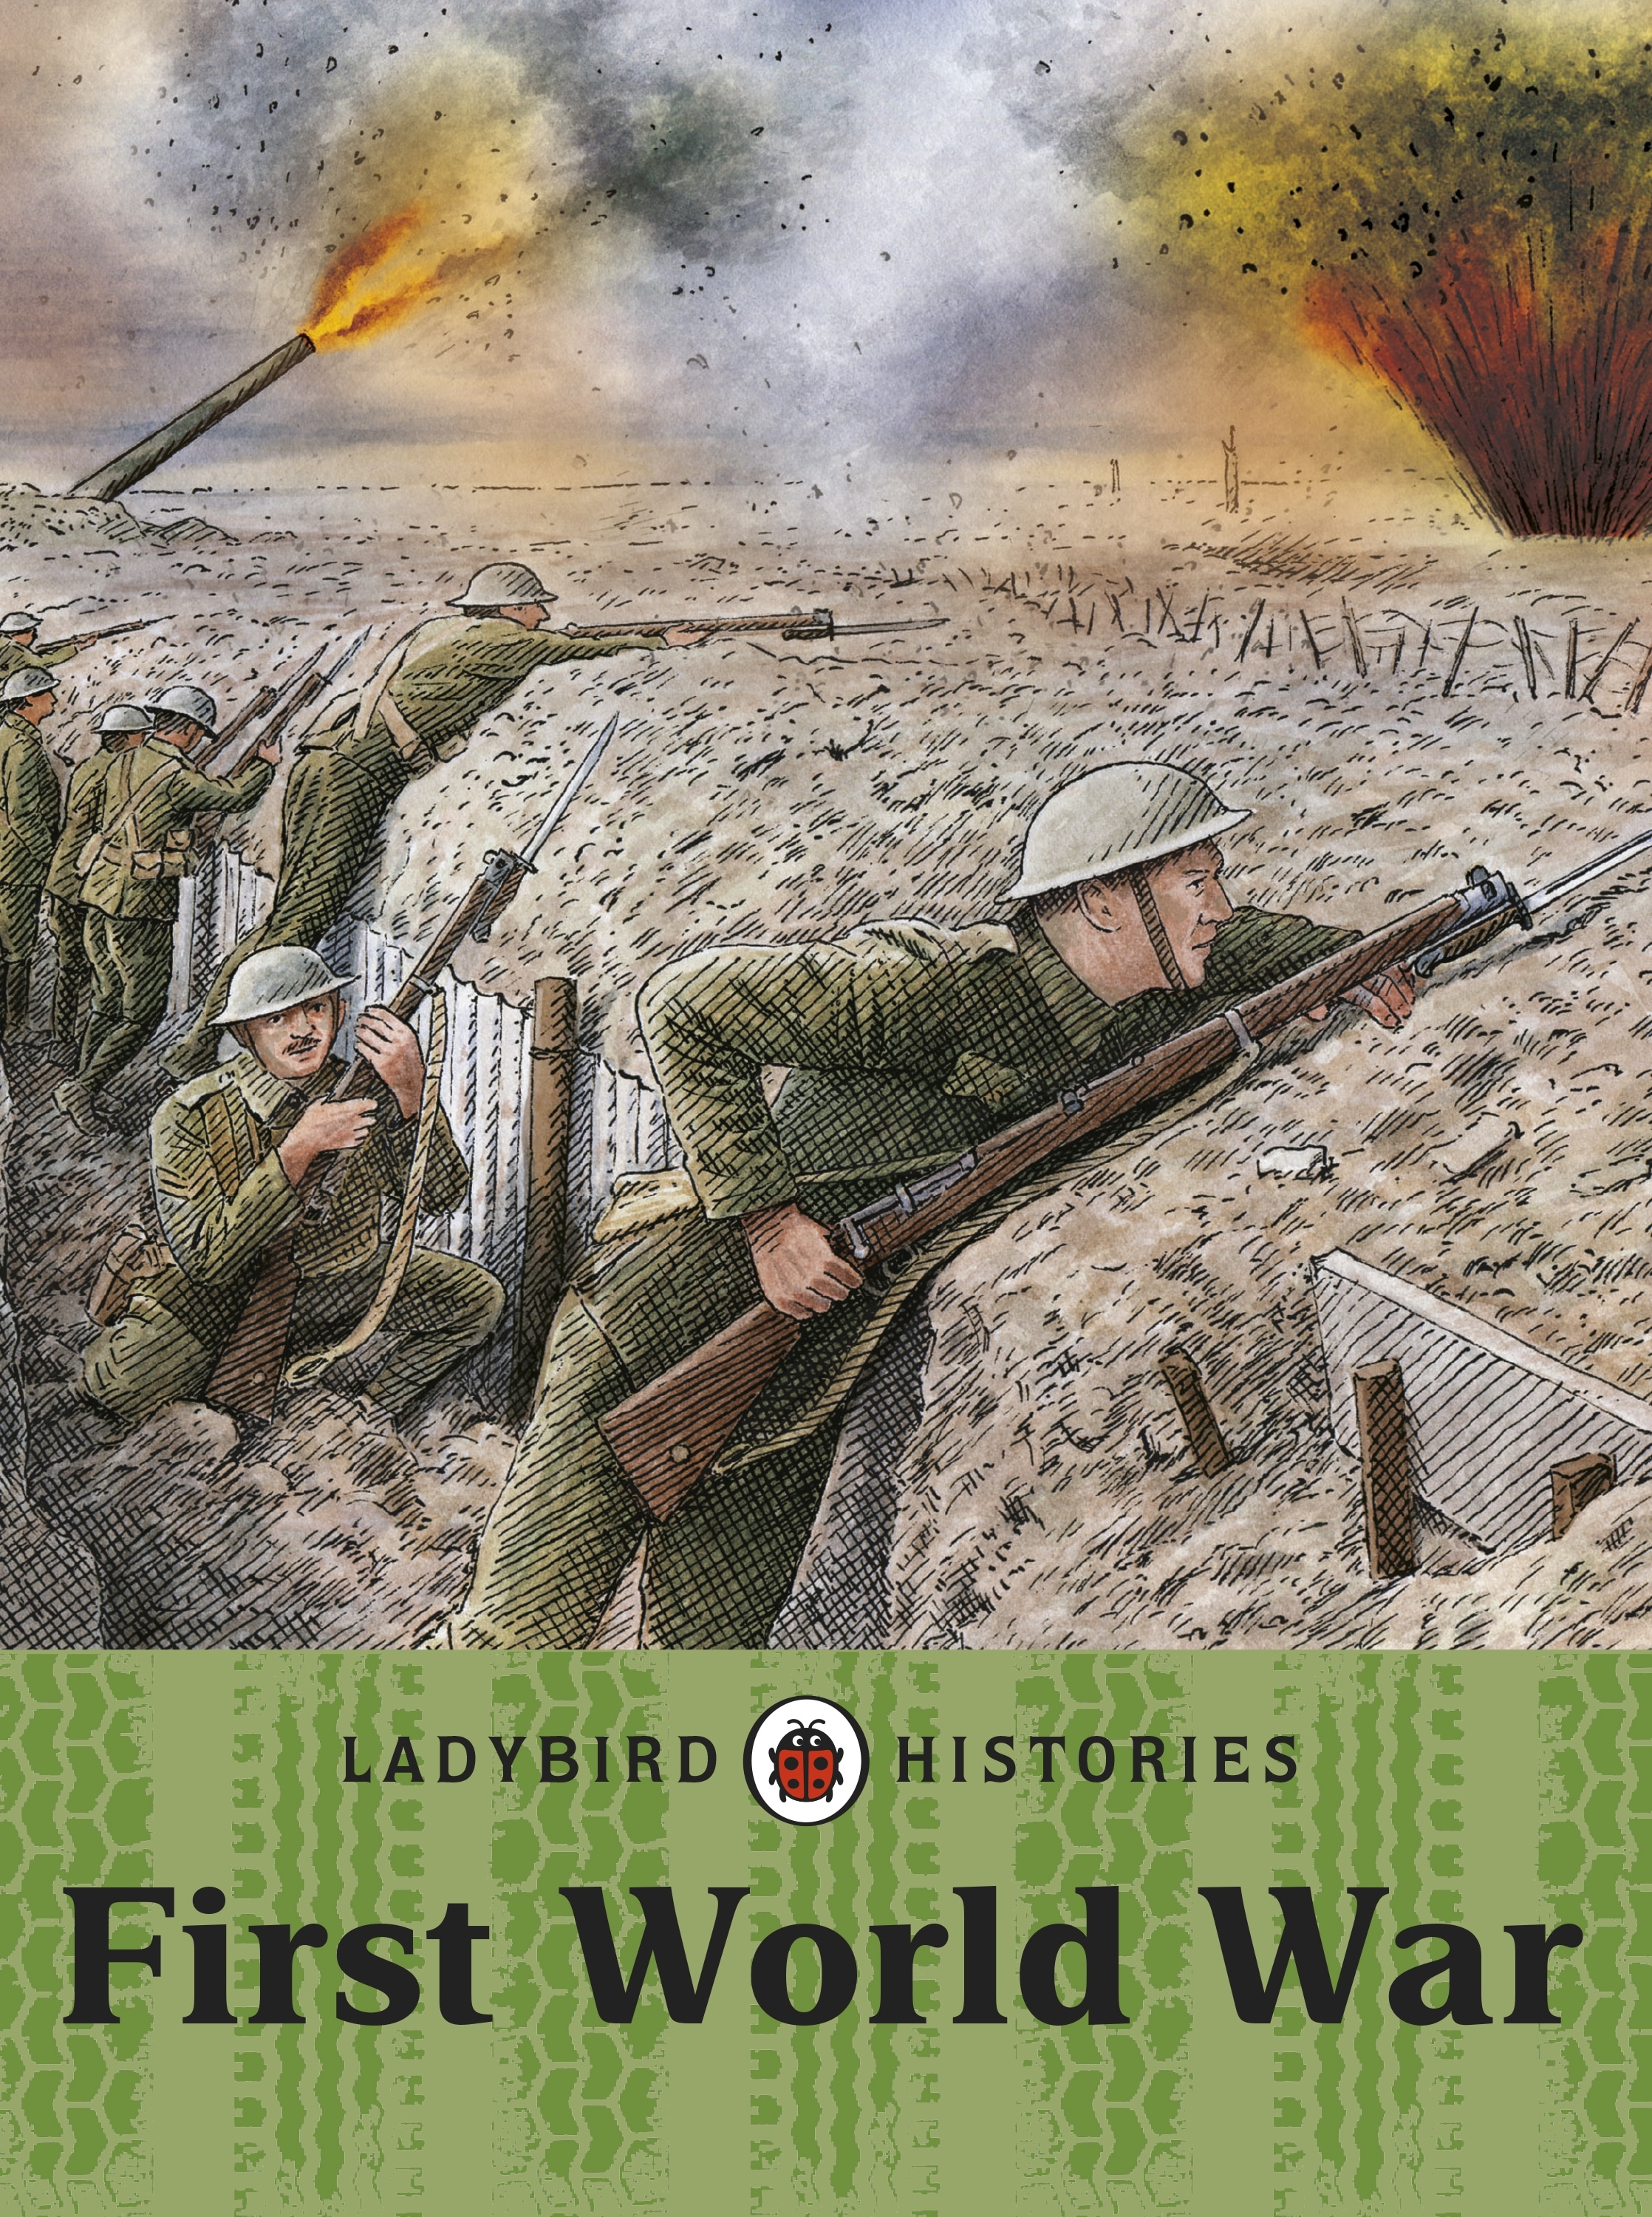 Book “Ladybird Histories: First World War” — October 3, 2013